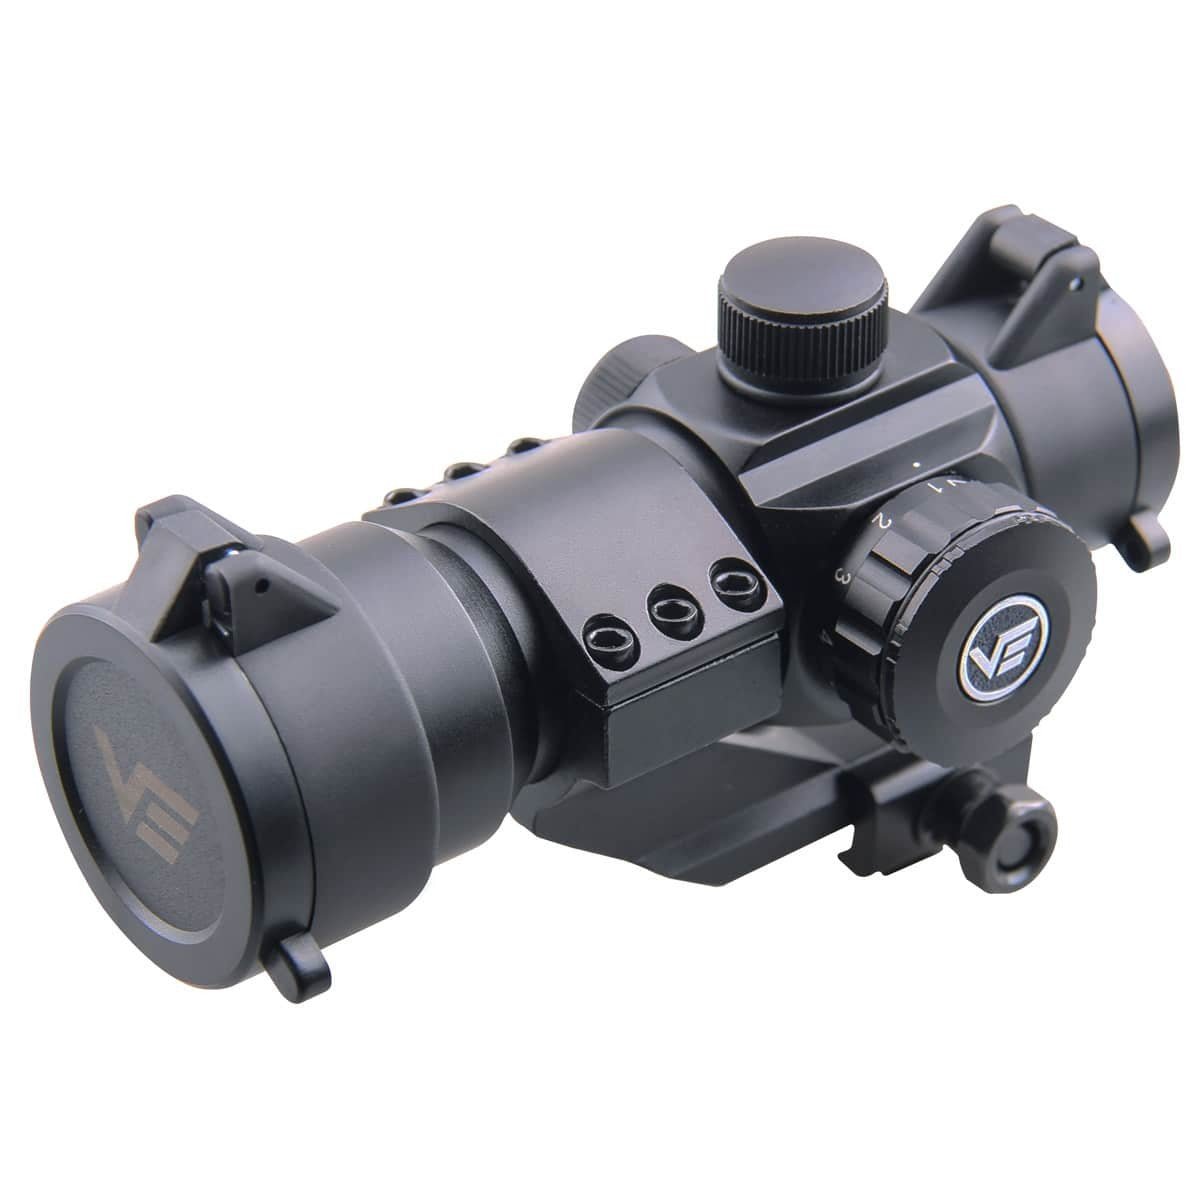 Stinger 1x28 Red Dot Sight - Vector Optics - Vector Optics US 